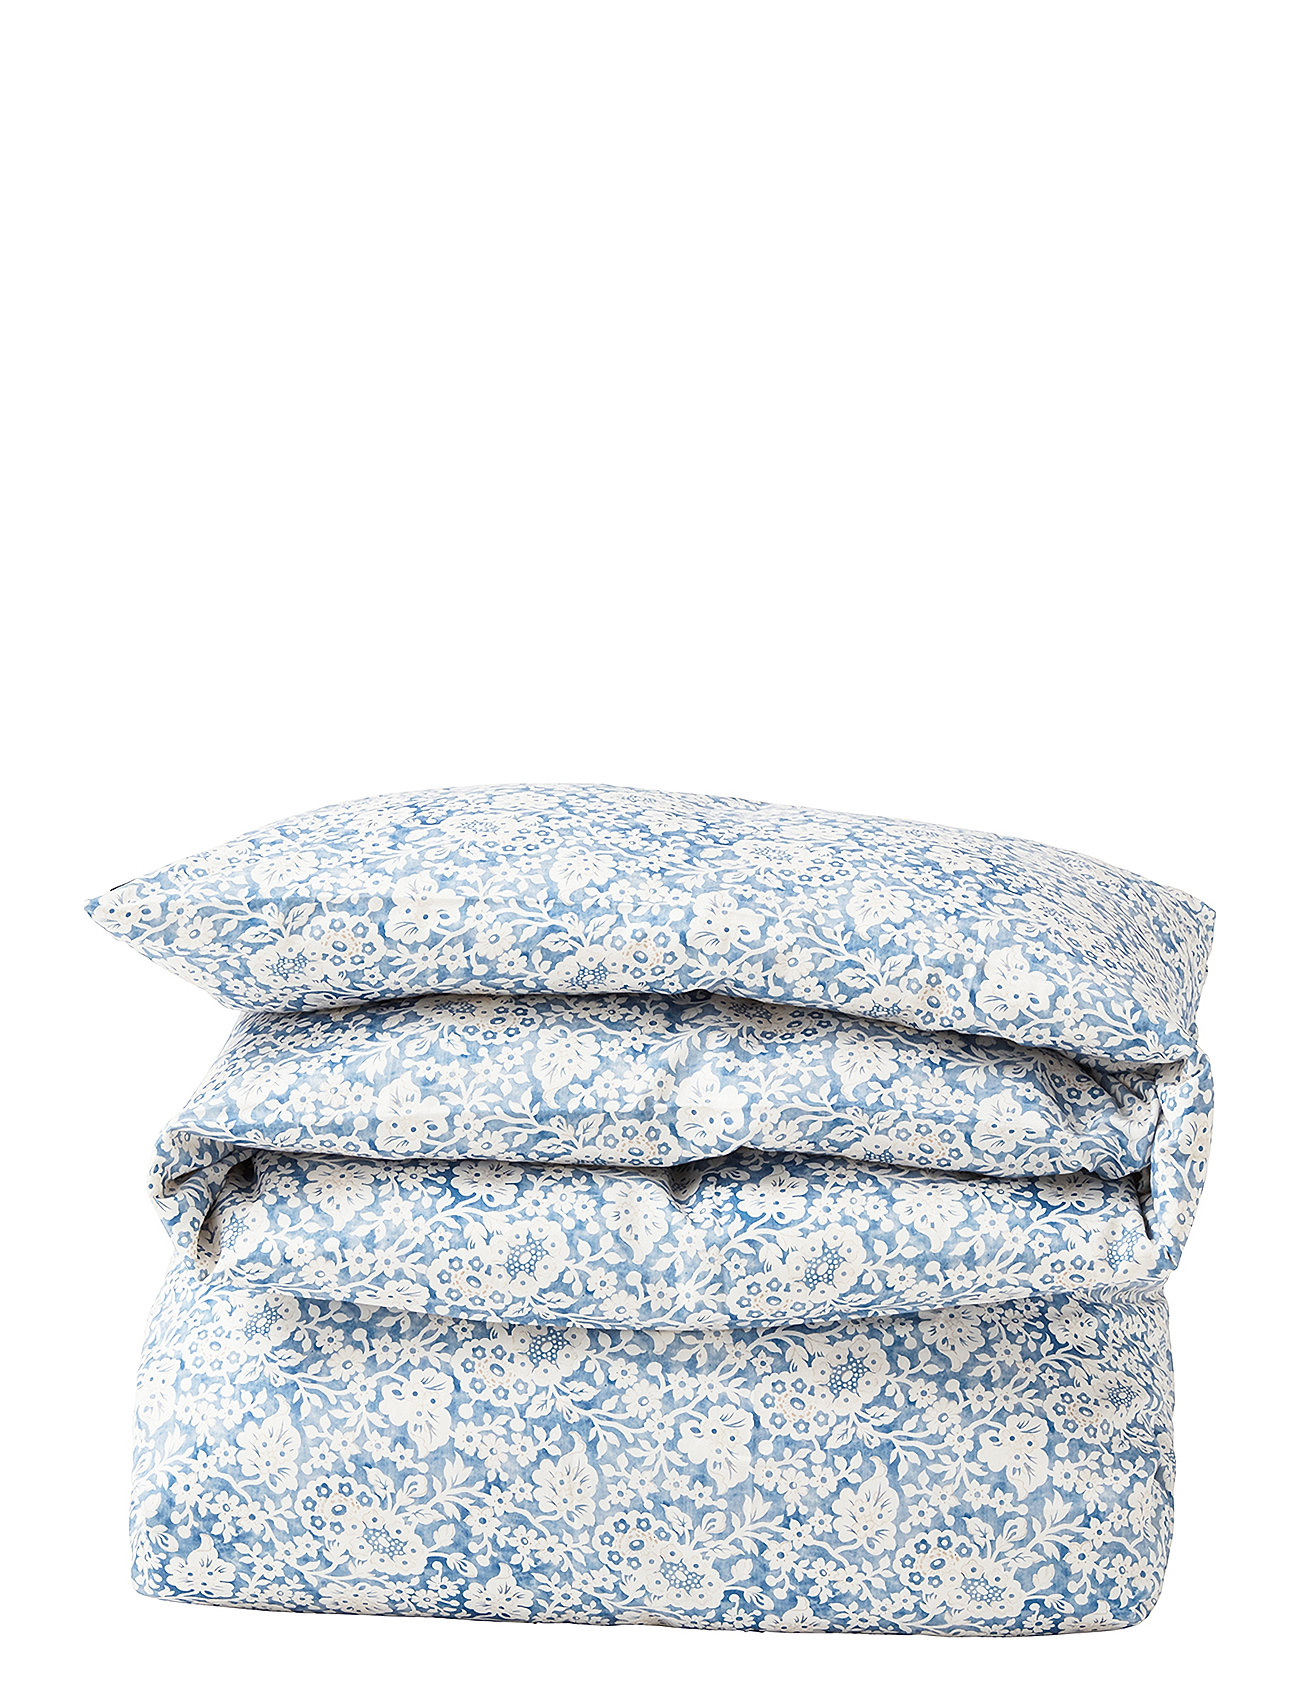 Blue Floral Printed Cotton Sateen Bed Set Home Textiles Bedtextiles Bed Sets Blue Lexington Home